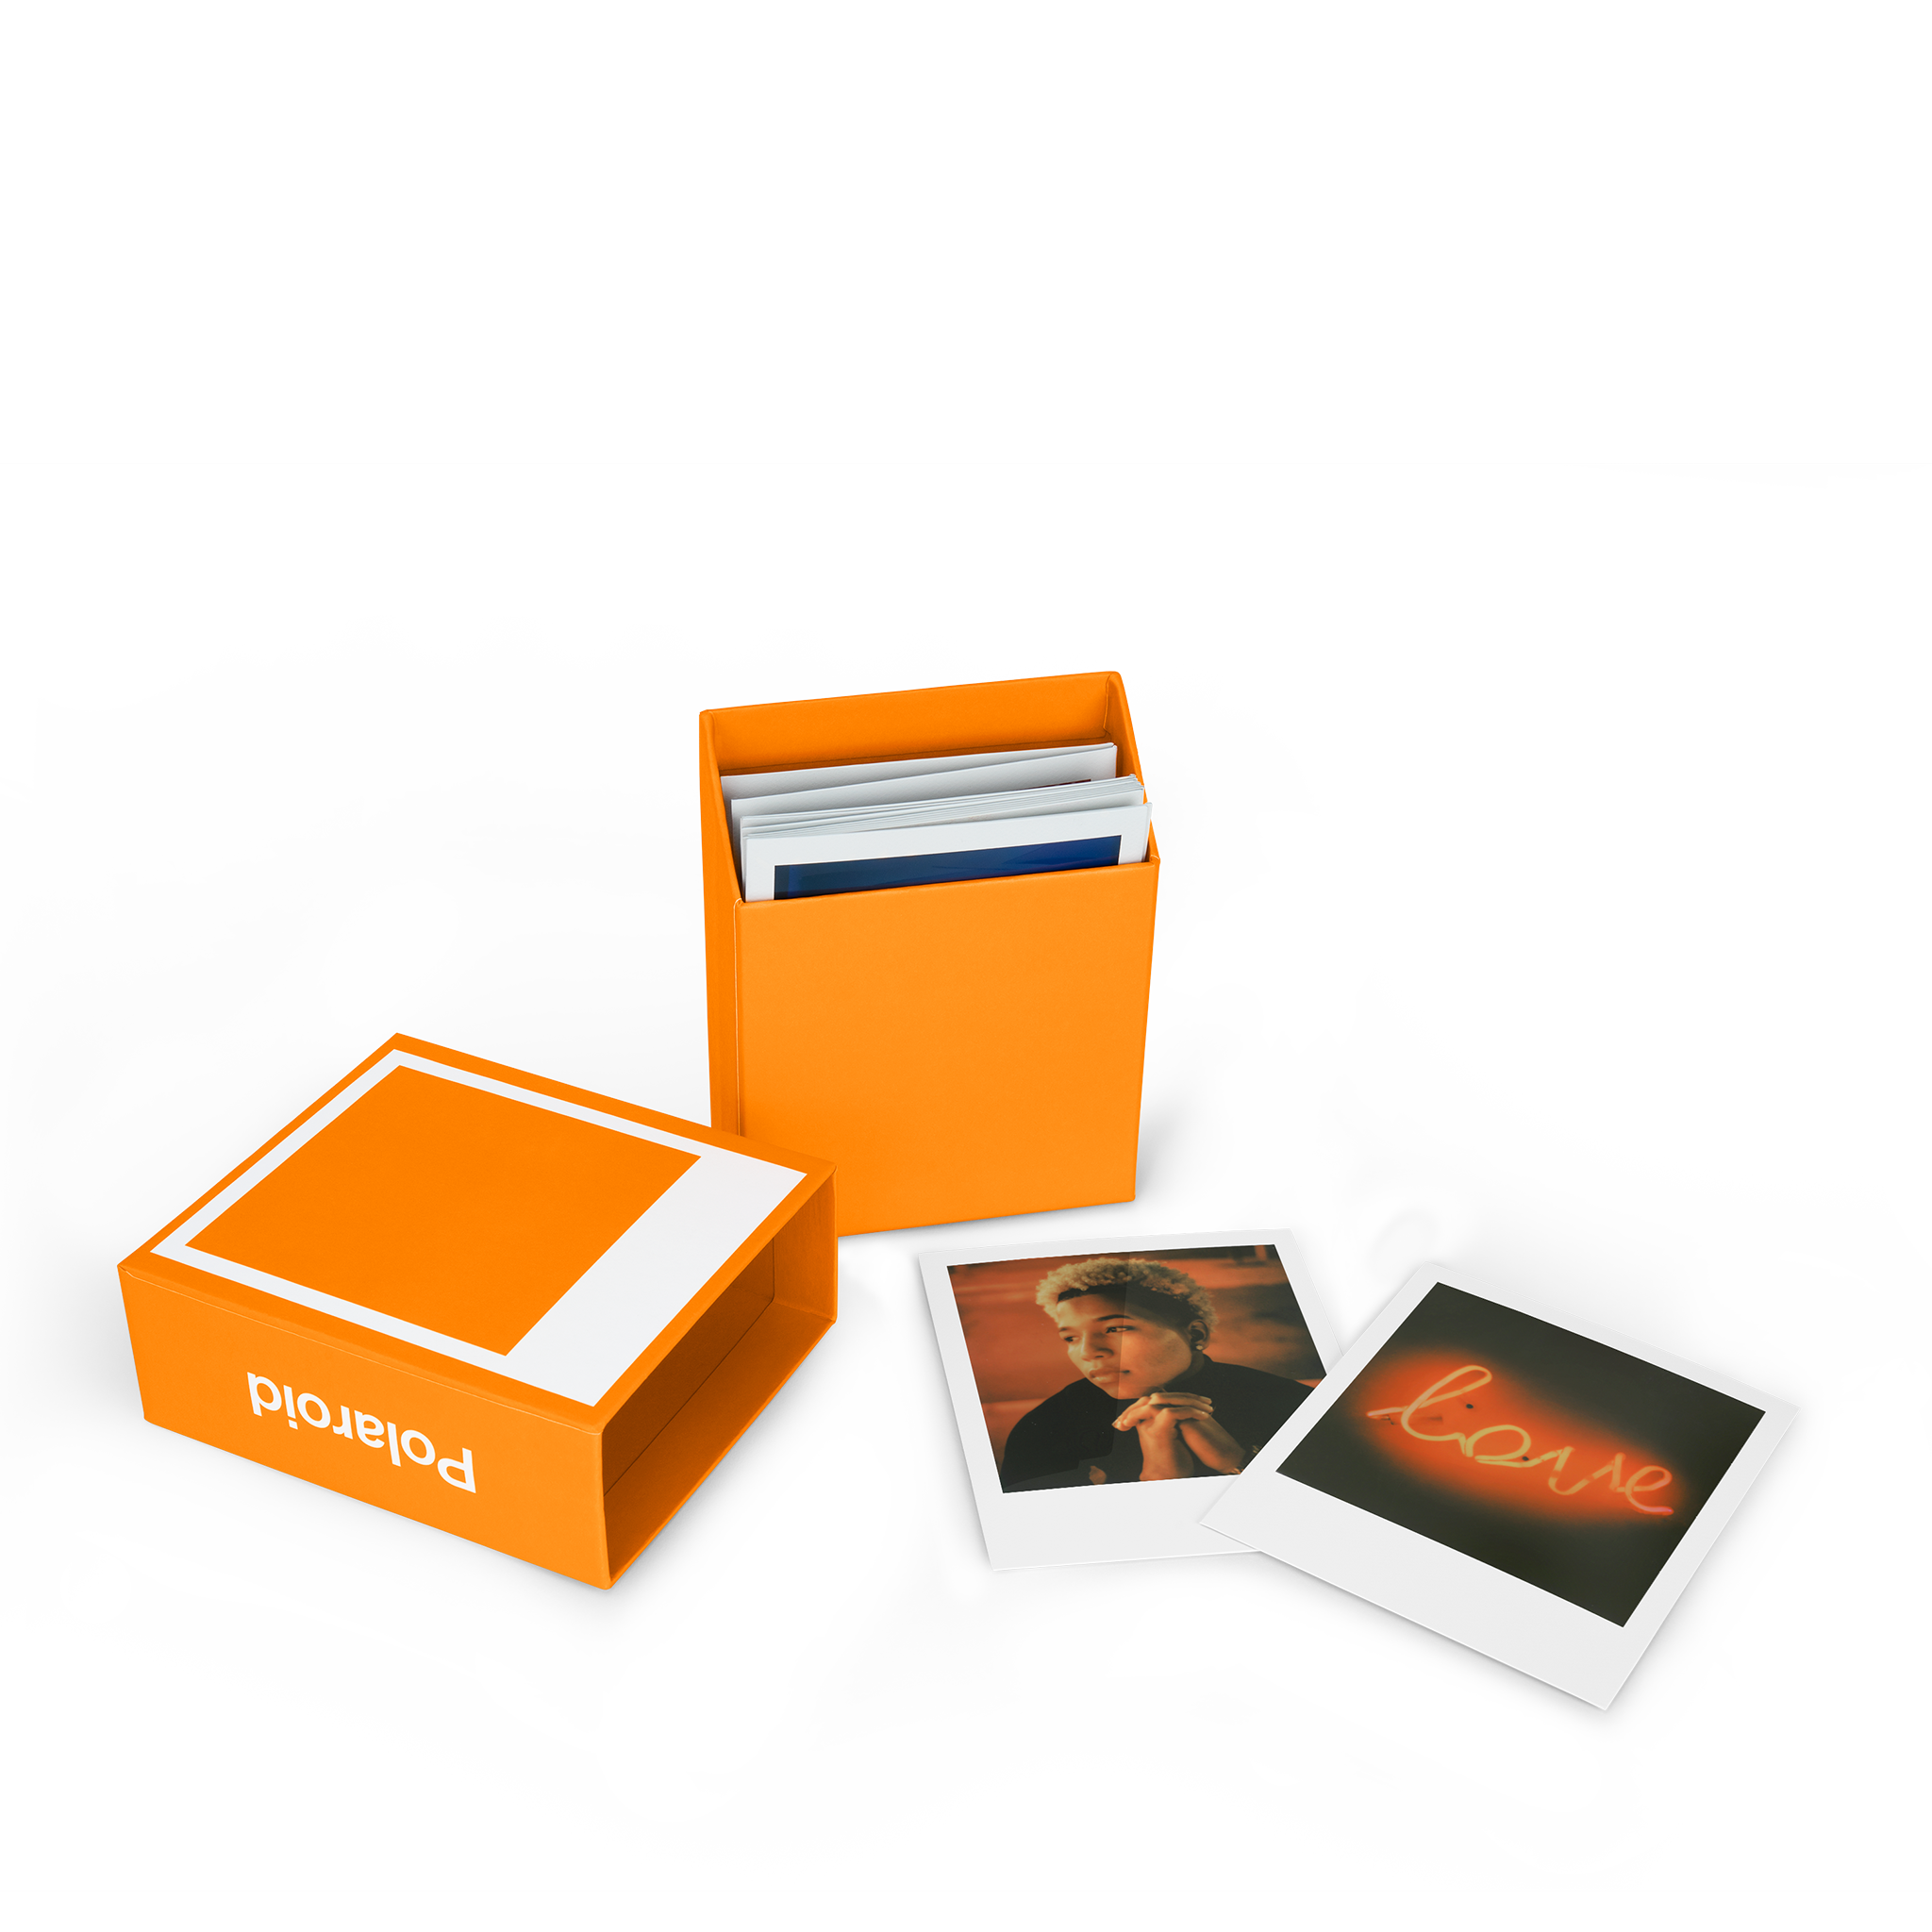  Polaroid Lab - Impresora instantánea - Paquete de fotos de  cámara de teléfono a película Polaroid con un paño de limpieza Lumintrail :  Electrónica